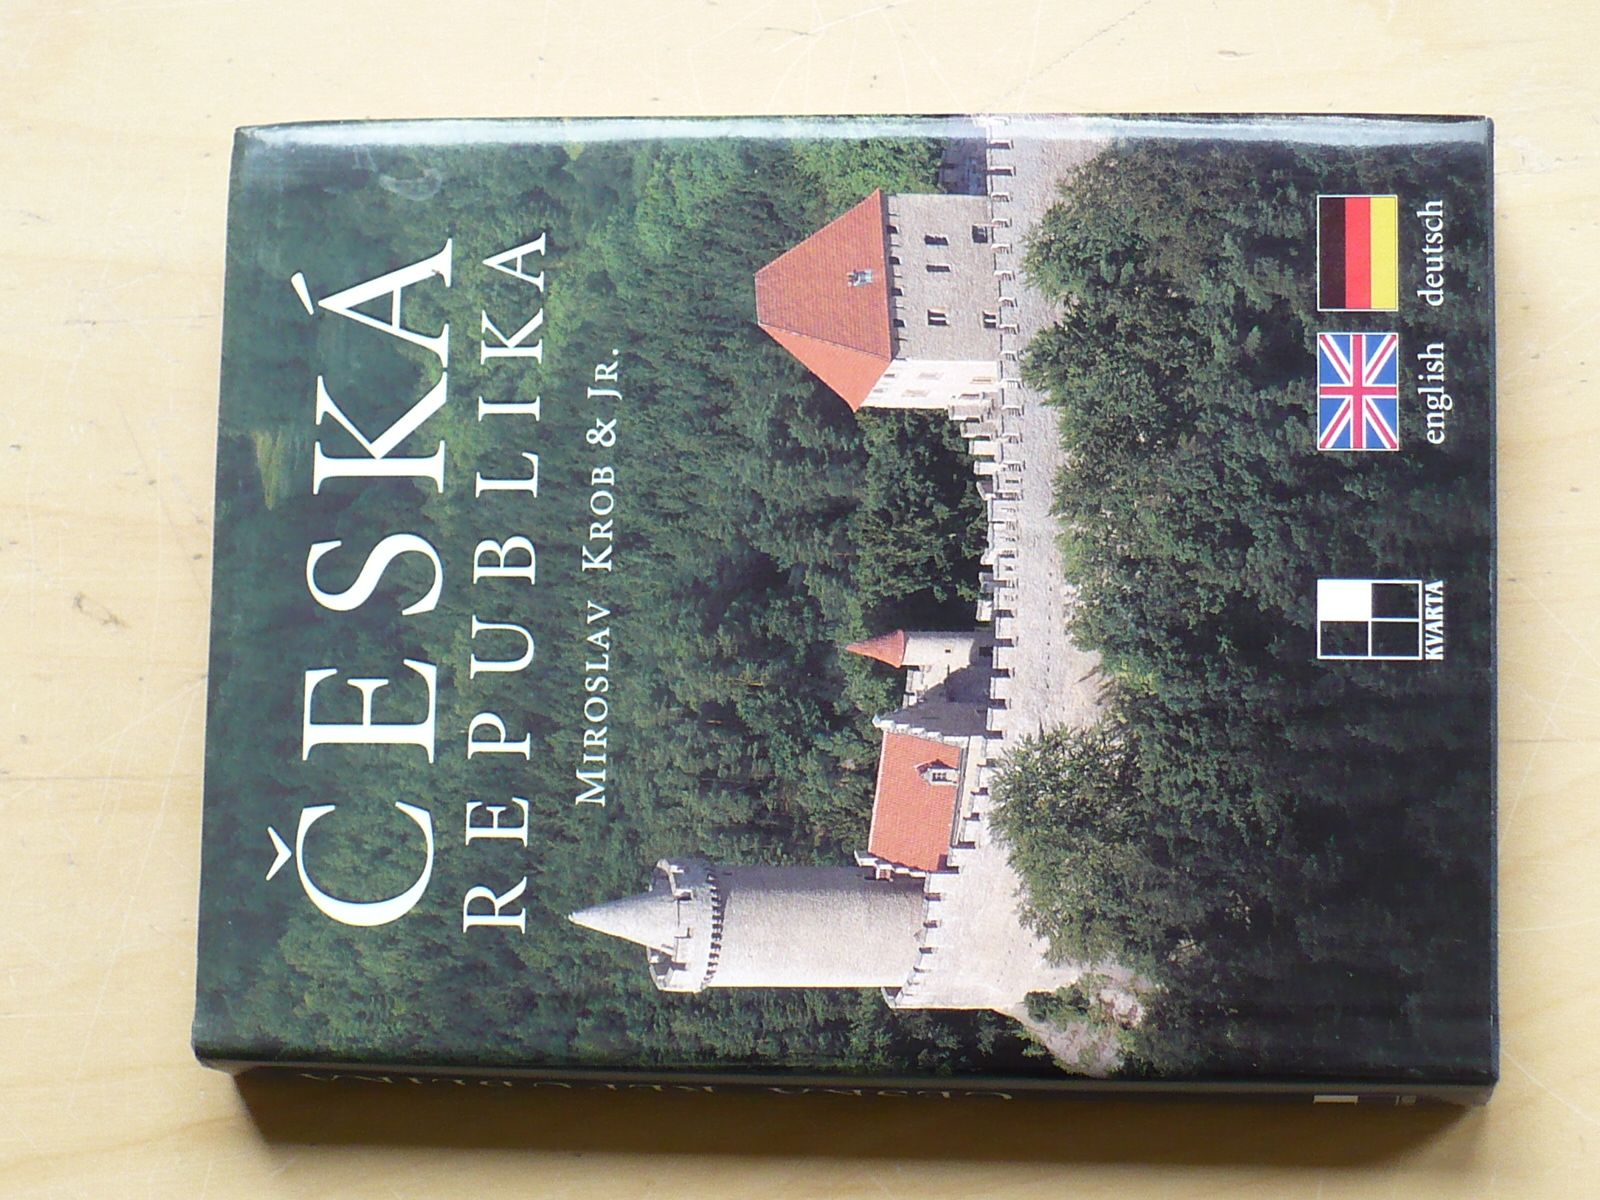 Krob - Česká republika (2000) česky, anglicky, německy